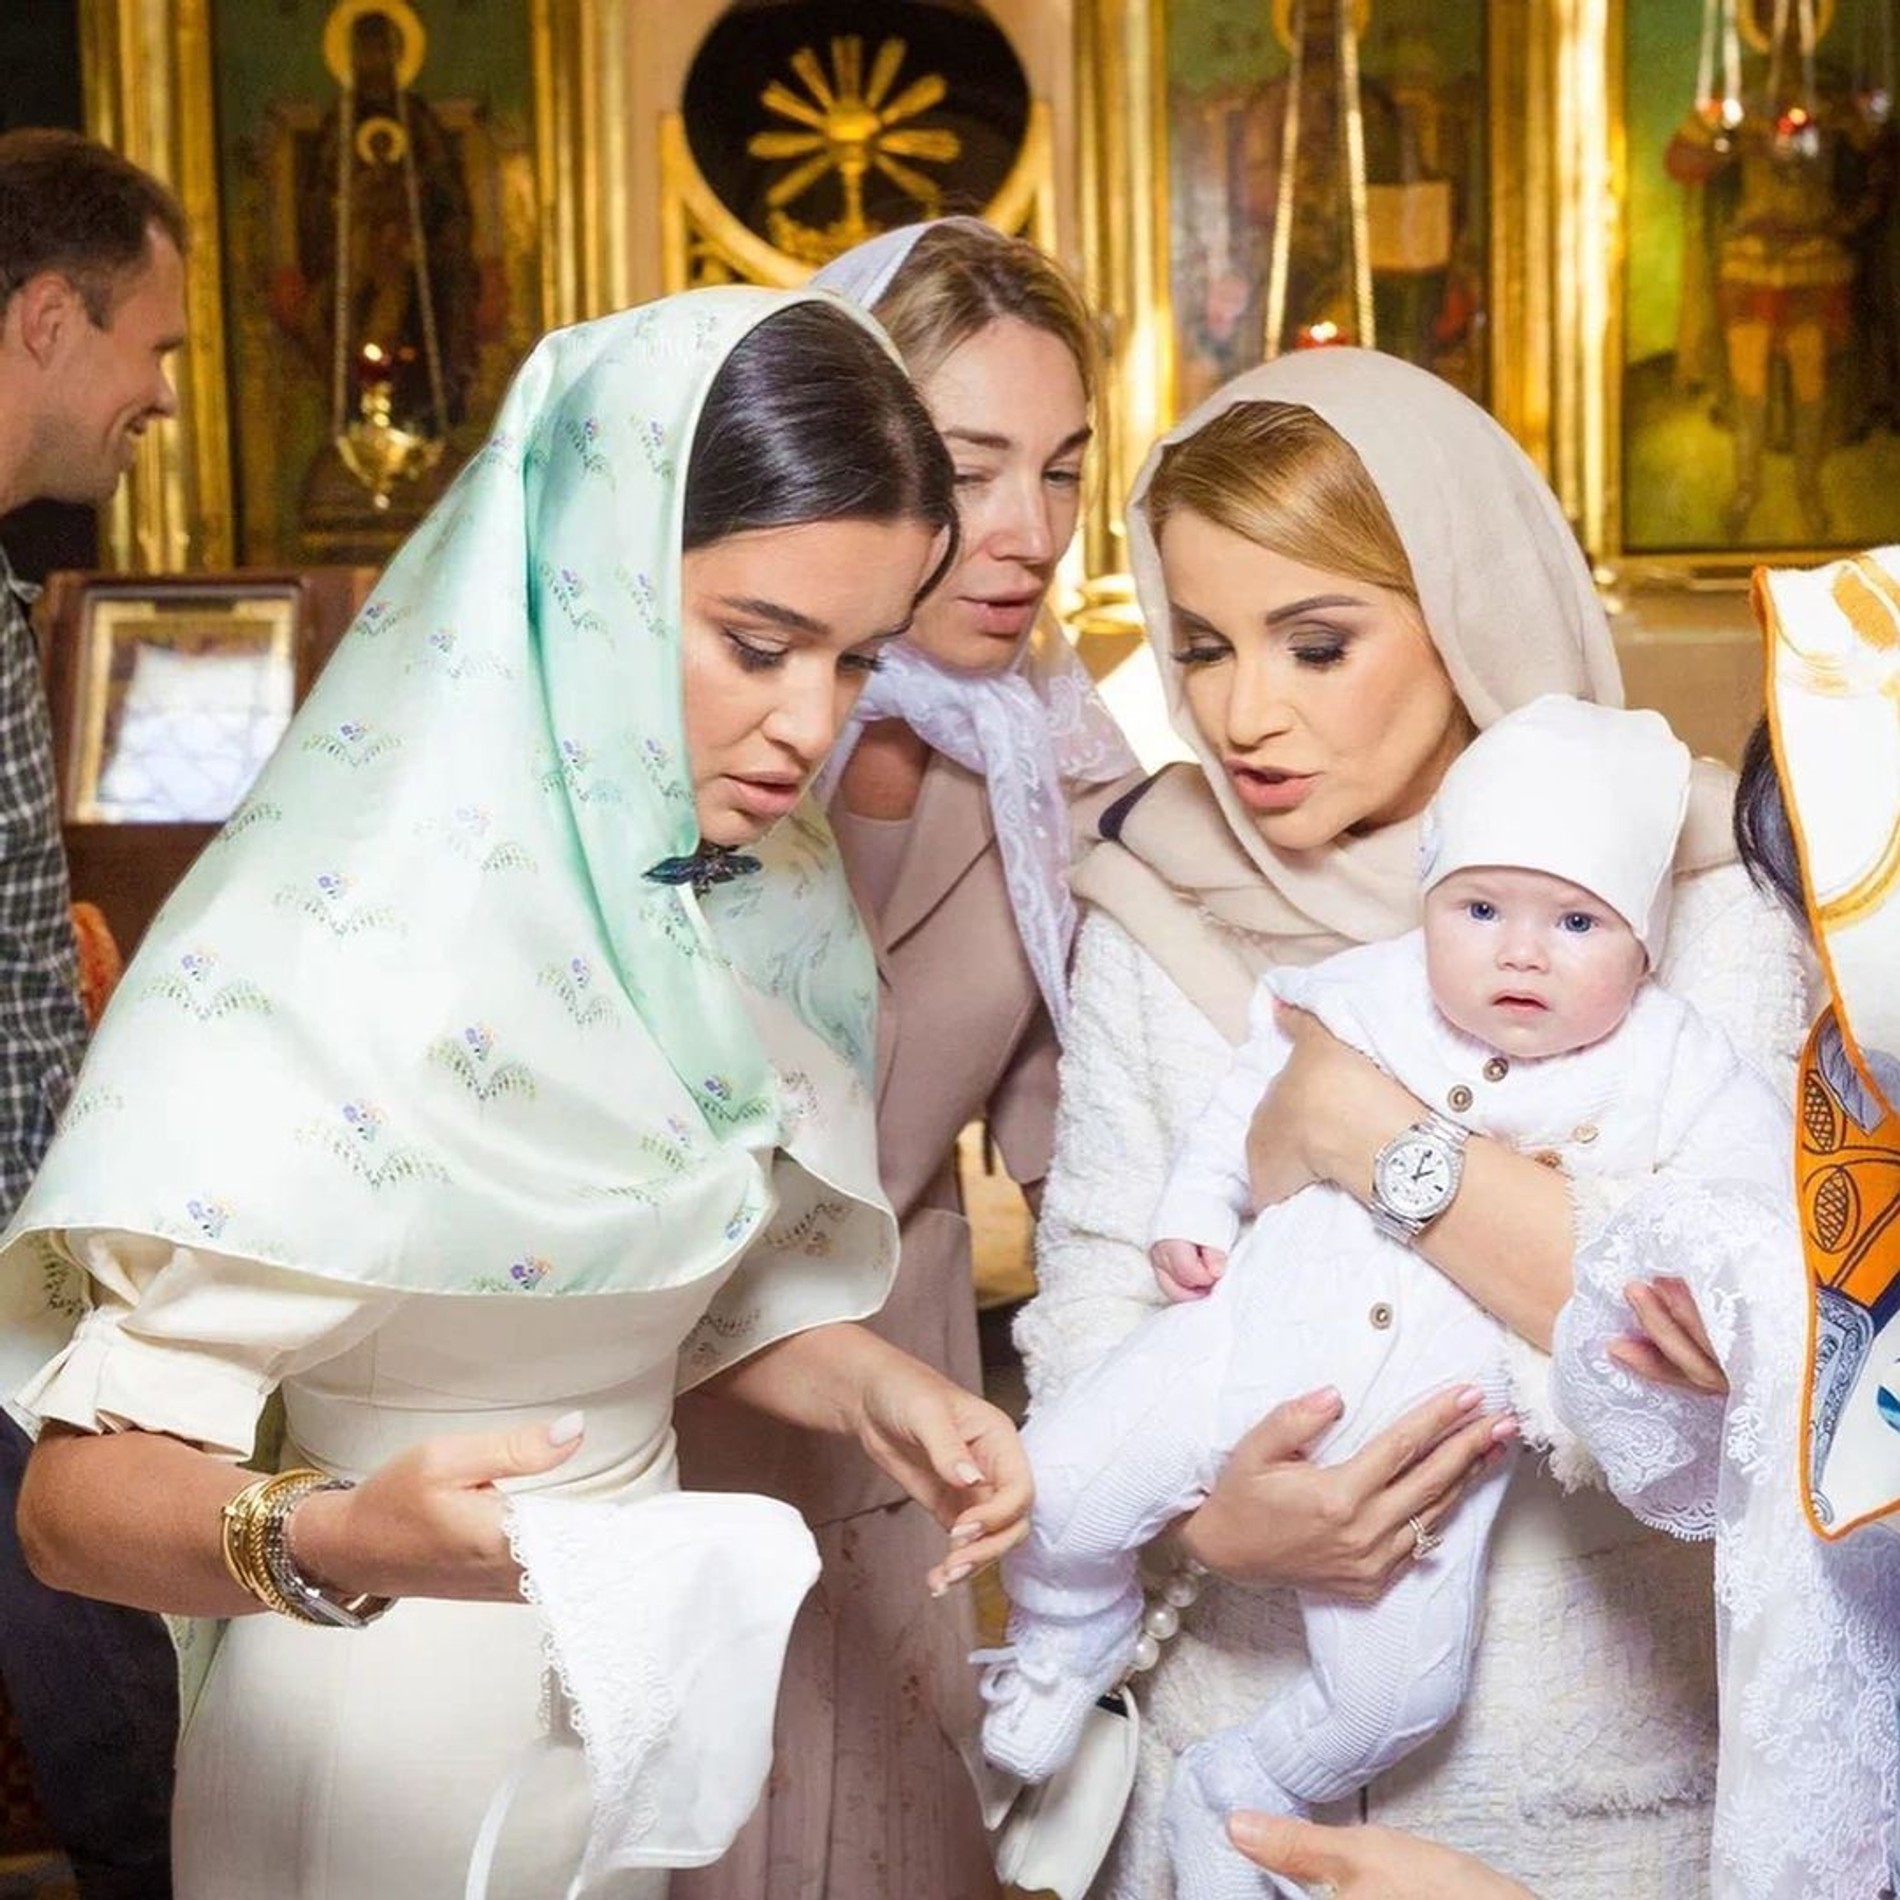 Ксения, Ольга и Анна во время крещения
Фото: Инстаграм* @borodylia